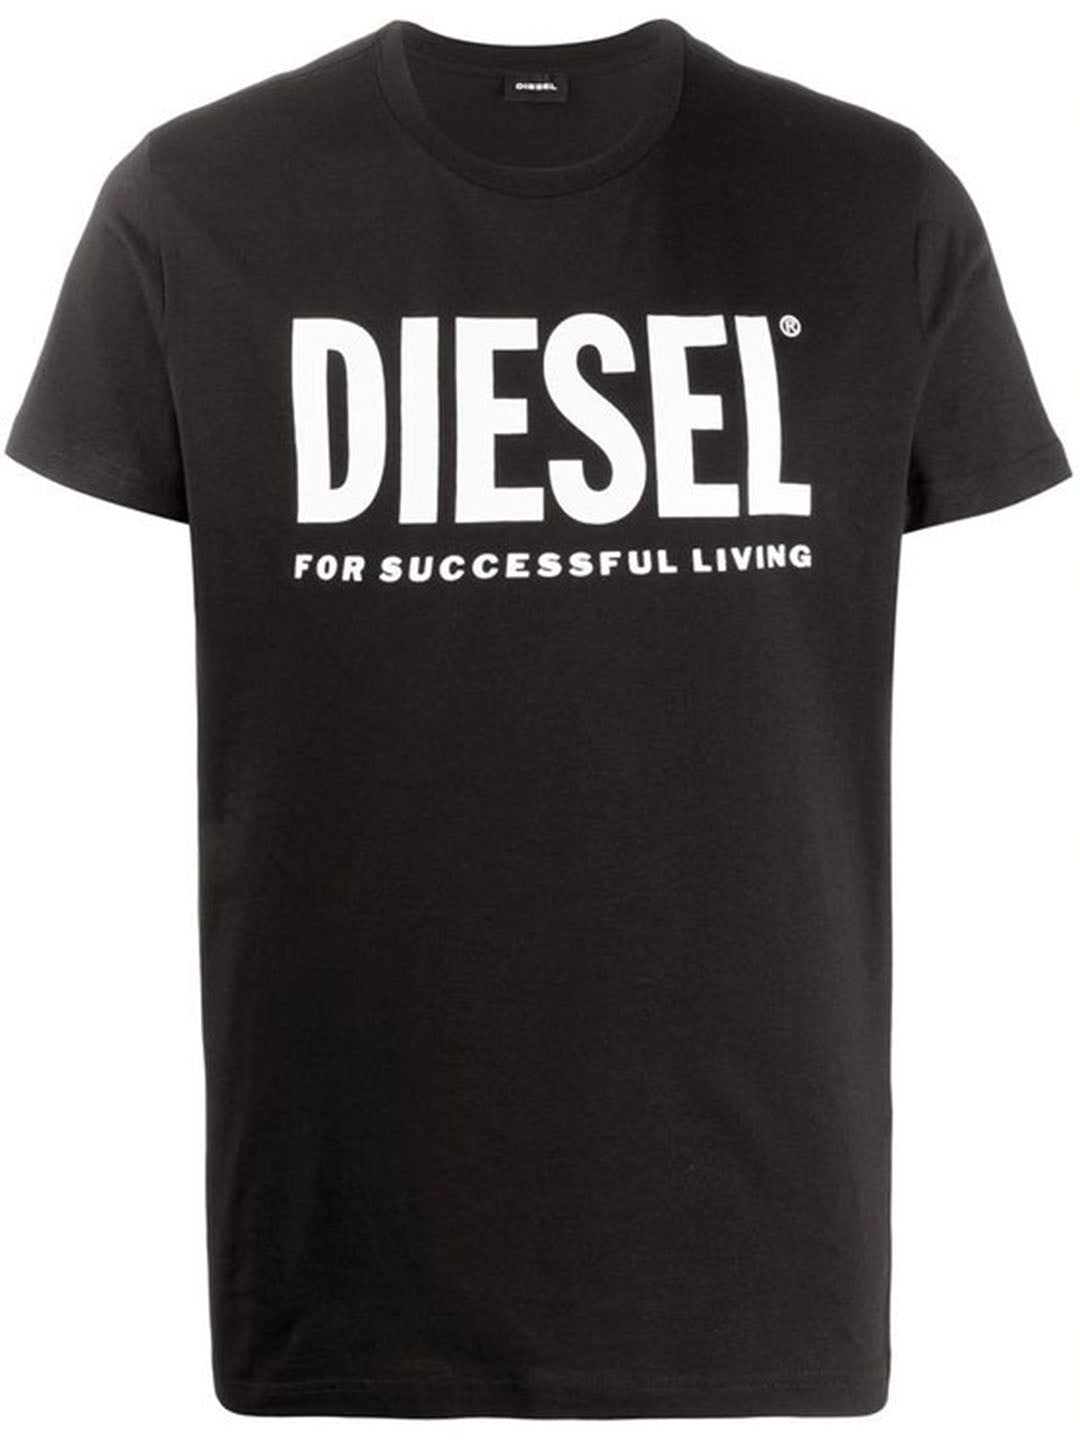 DIESEL black/white cotton T-shirt